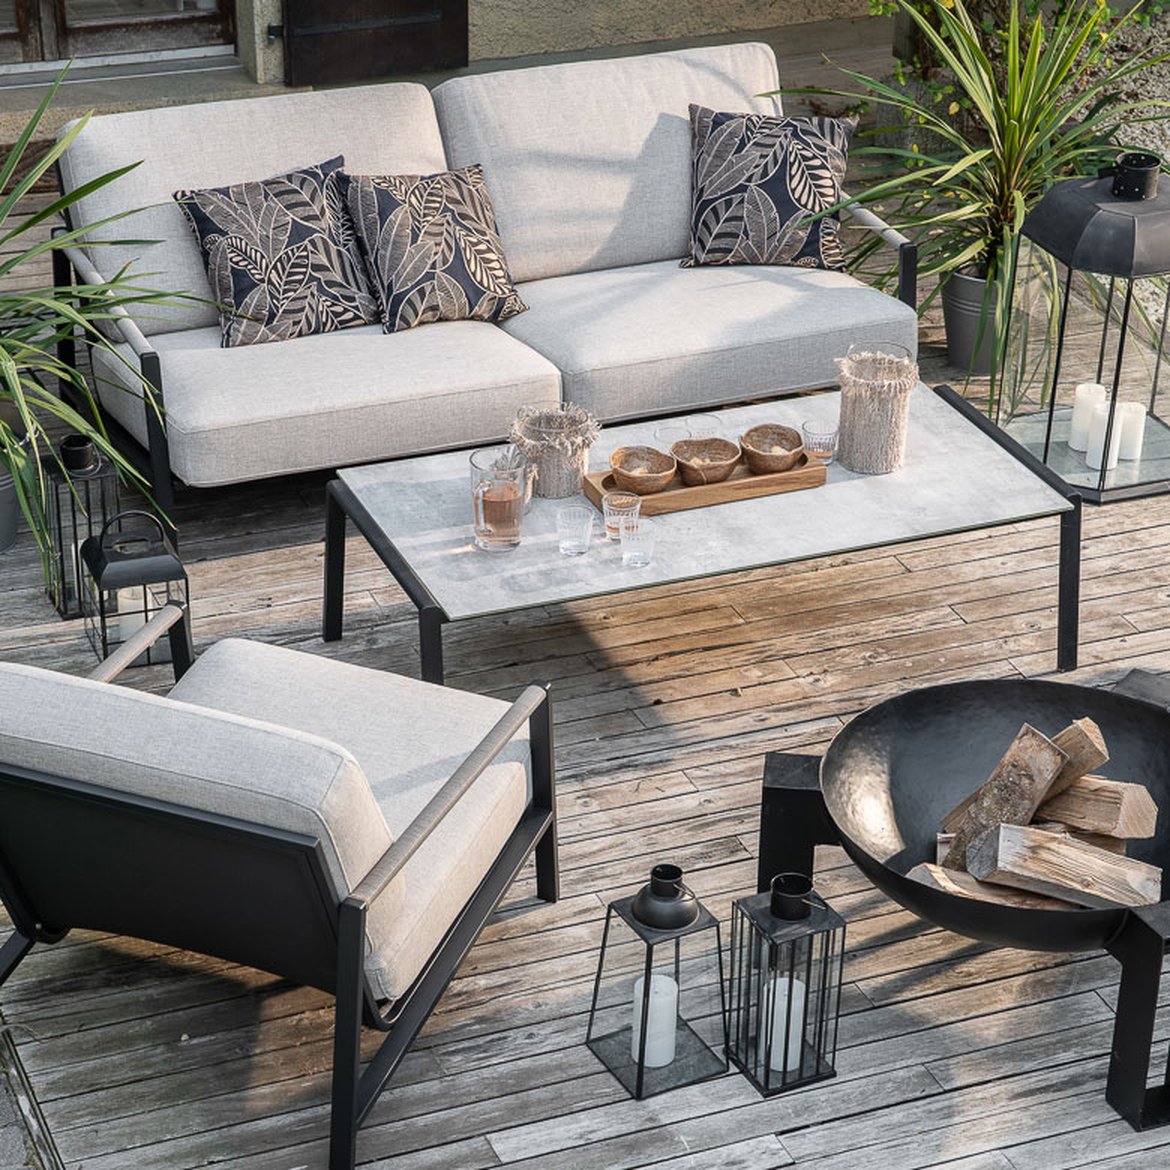 Espace lounge - Canape de jardin, fauteuil relax, tables d'appoint, mobilier de jardin, mobilier d'exterieur - Schilliger